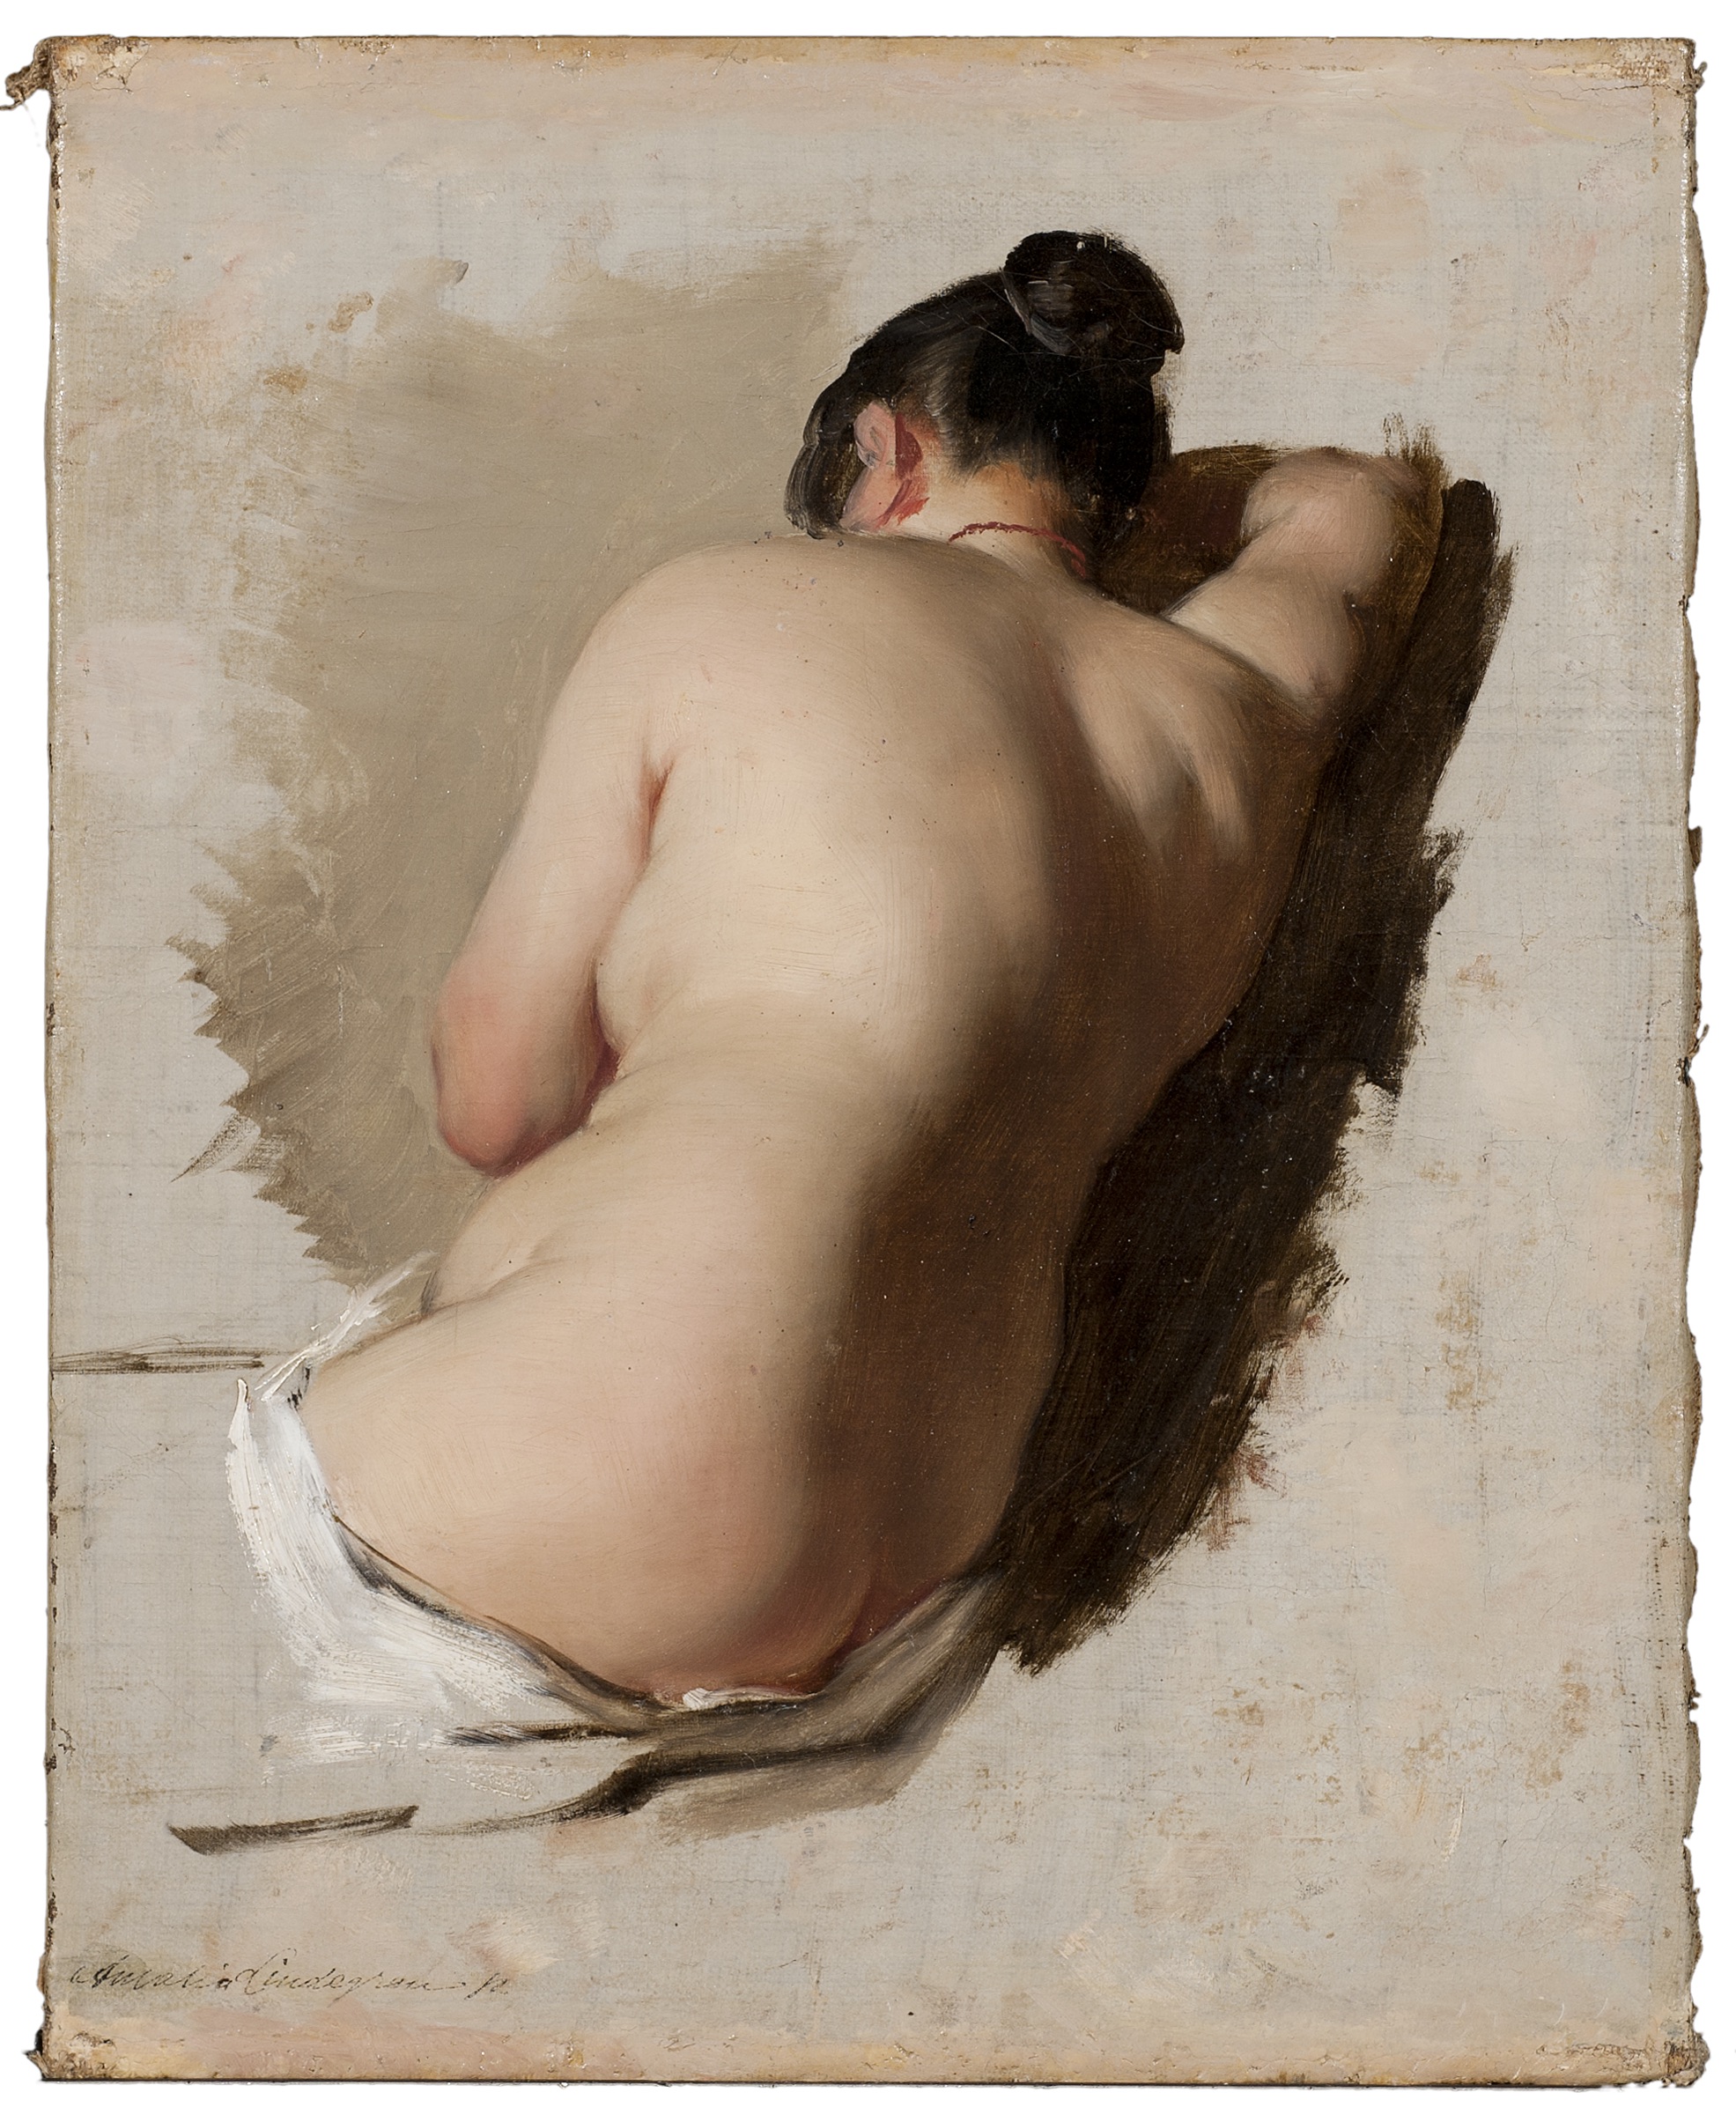 Akt - studie by Amalia Lindegren - 1850 - 33,5 x 26,5 cm 